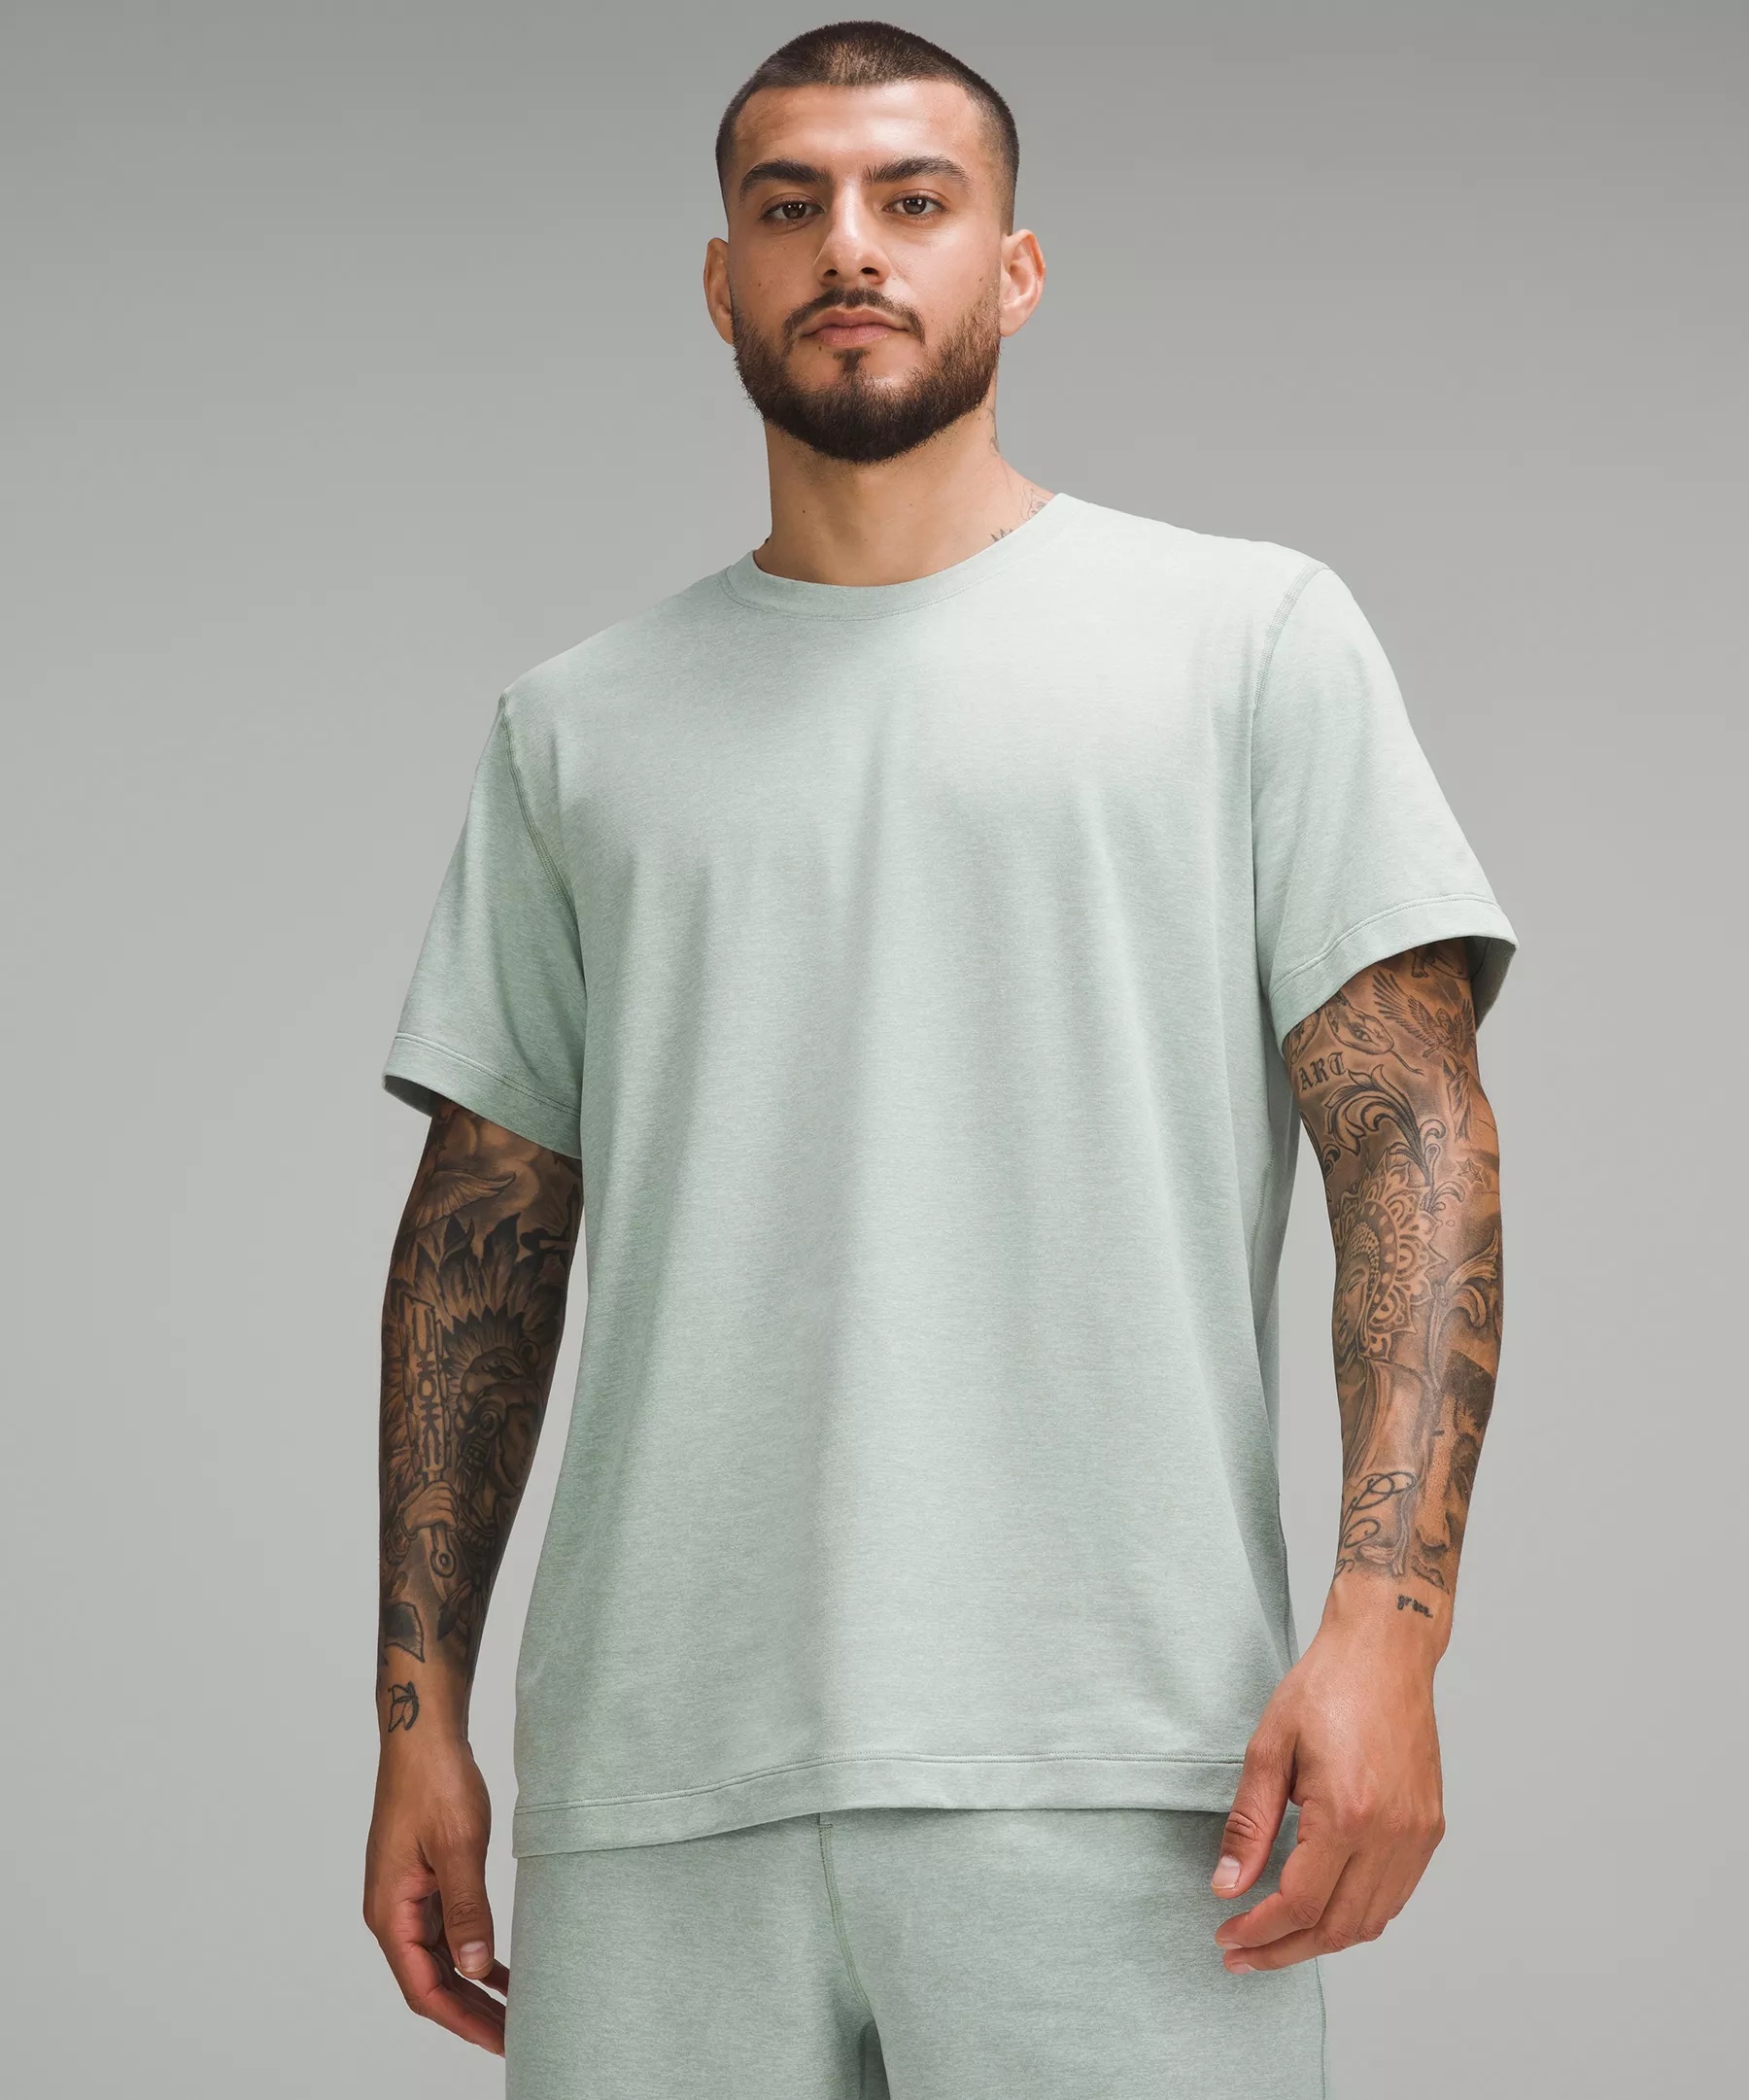 Soft Jersey Short-Sleeve Shirt - 1